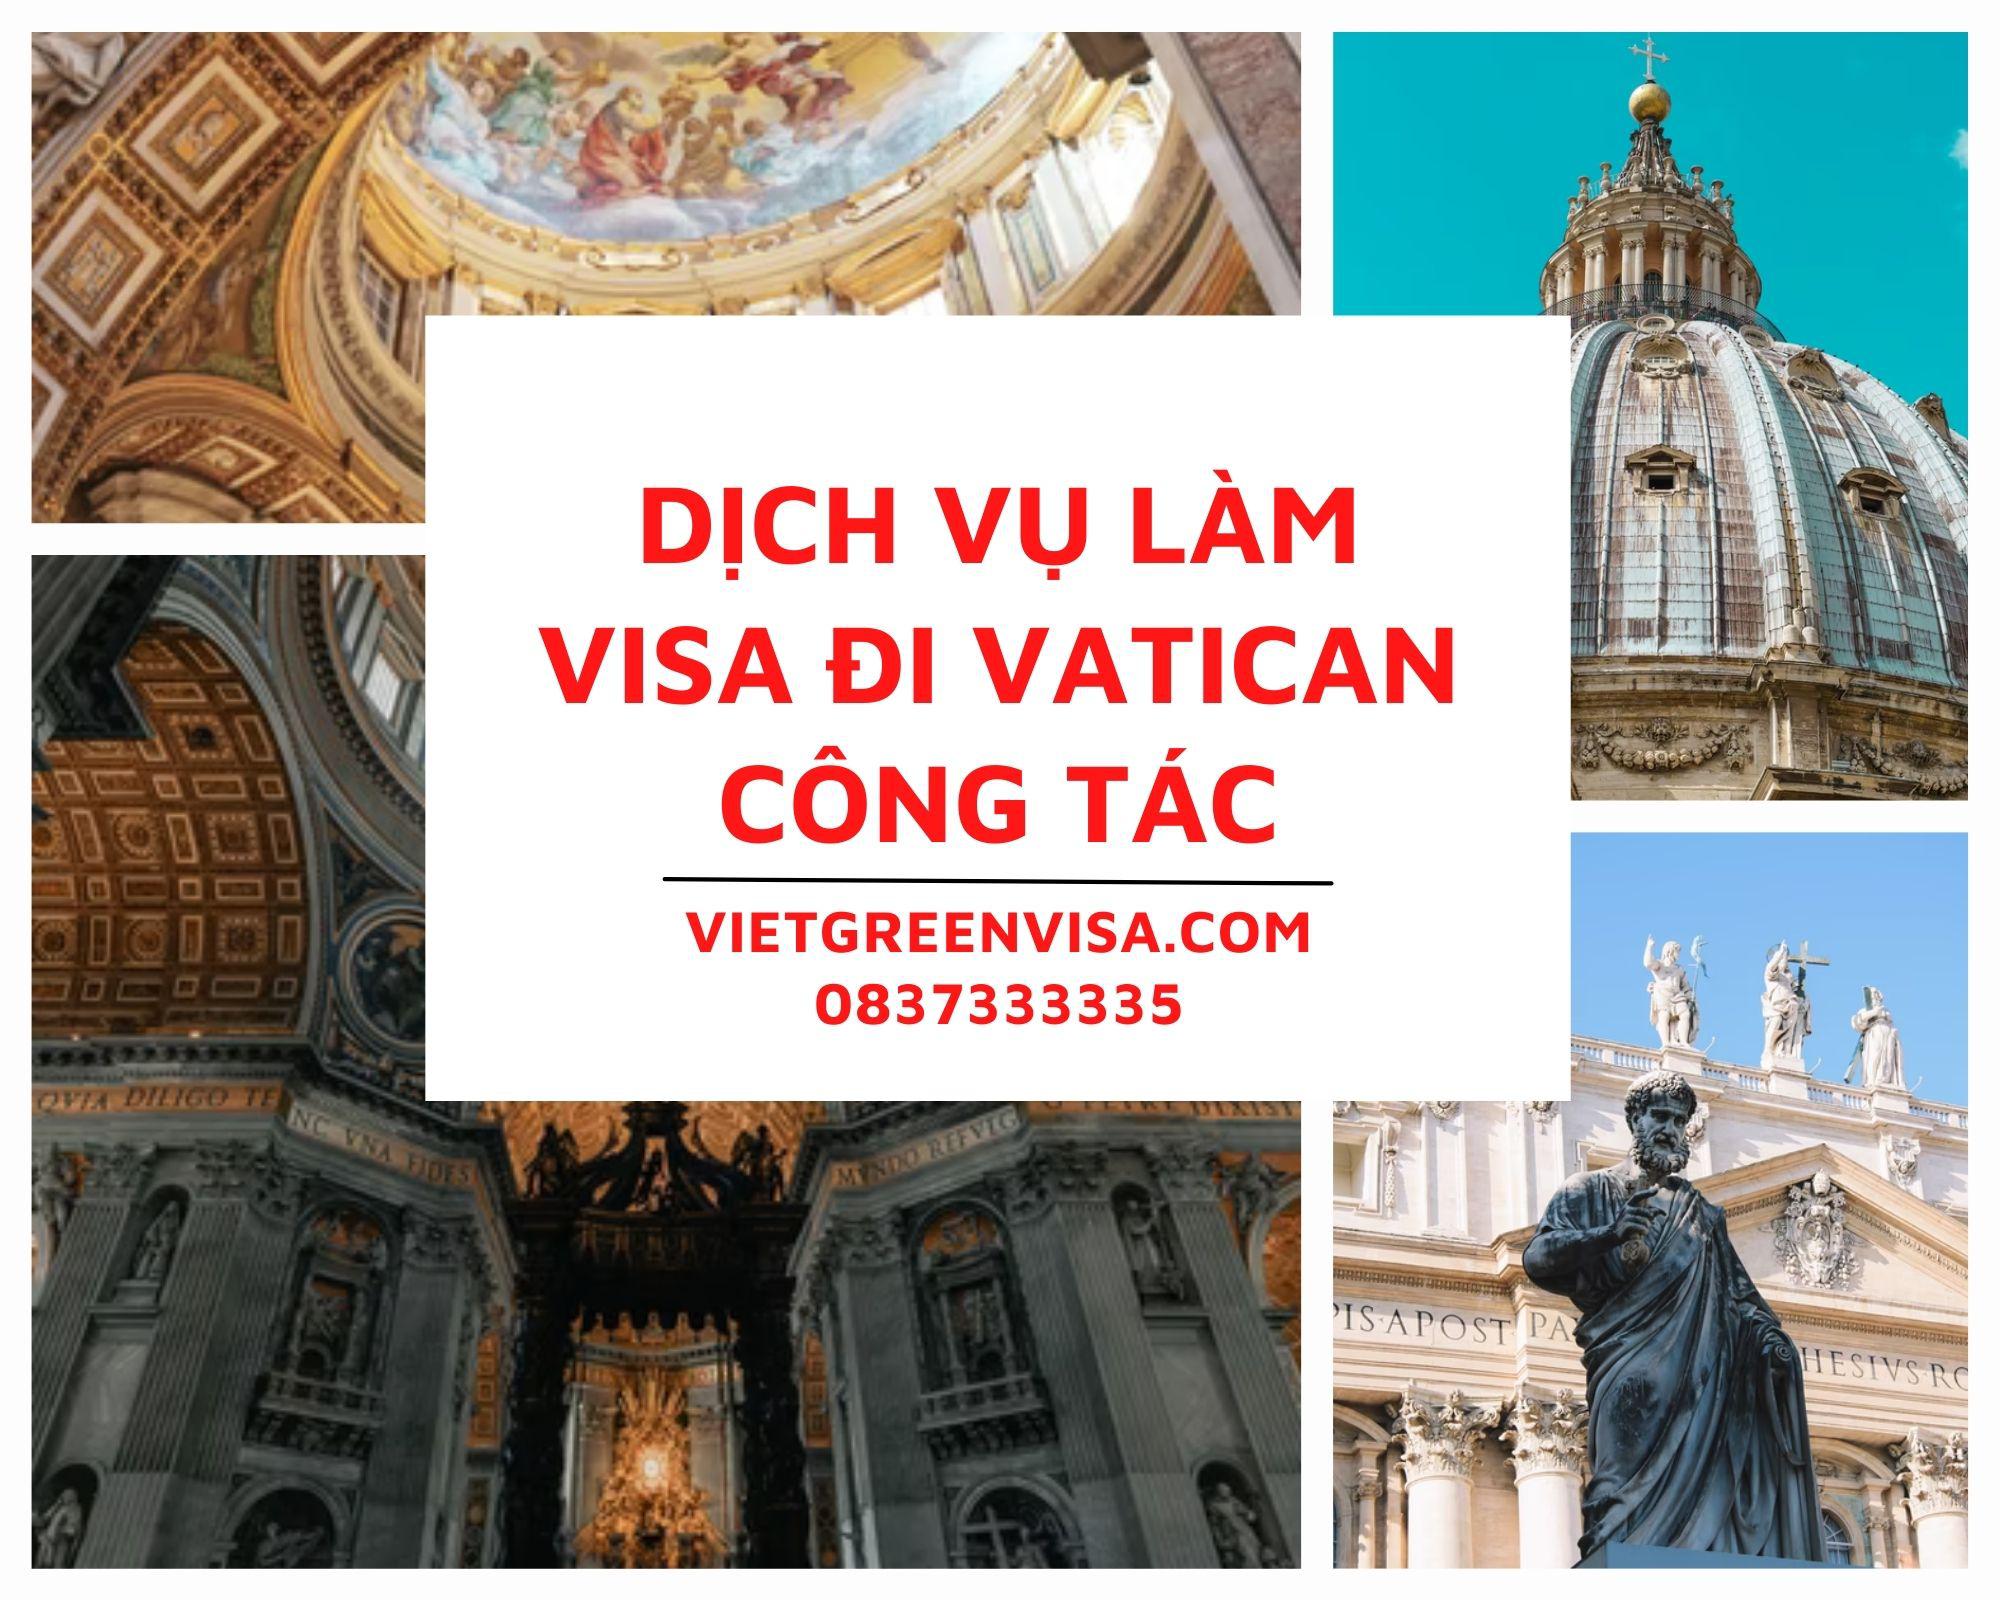 Hỗ trợ làm visa đi Vatican công tác uy tín